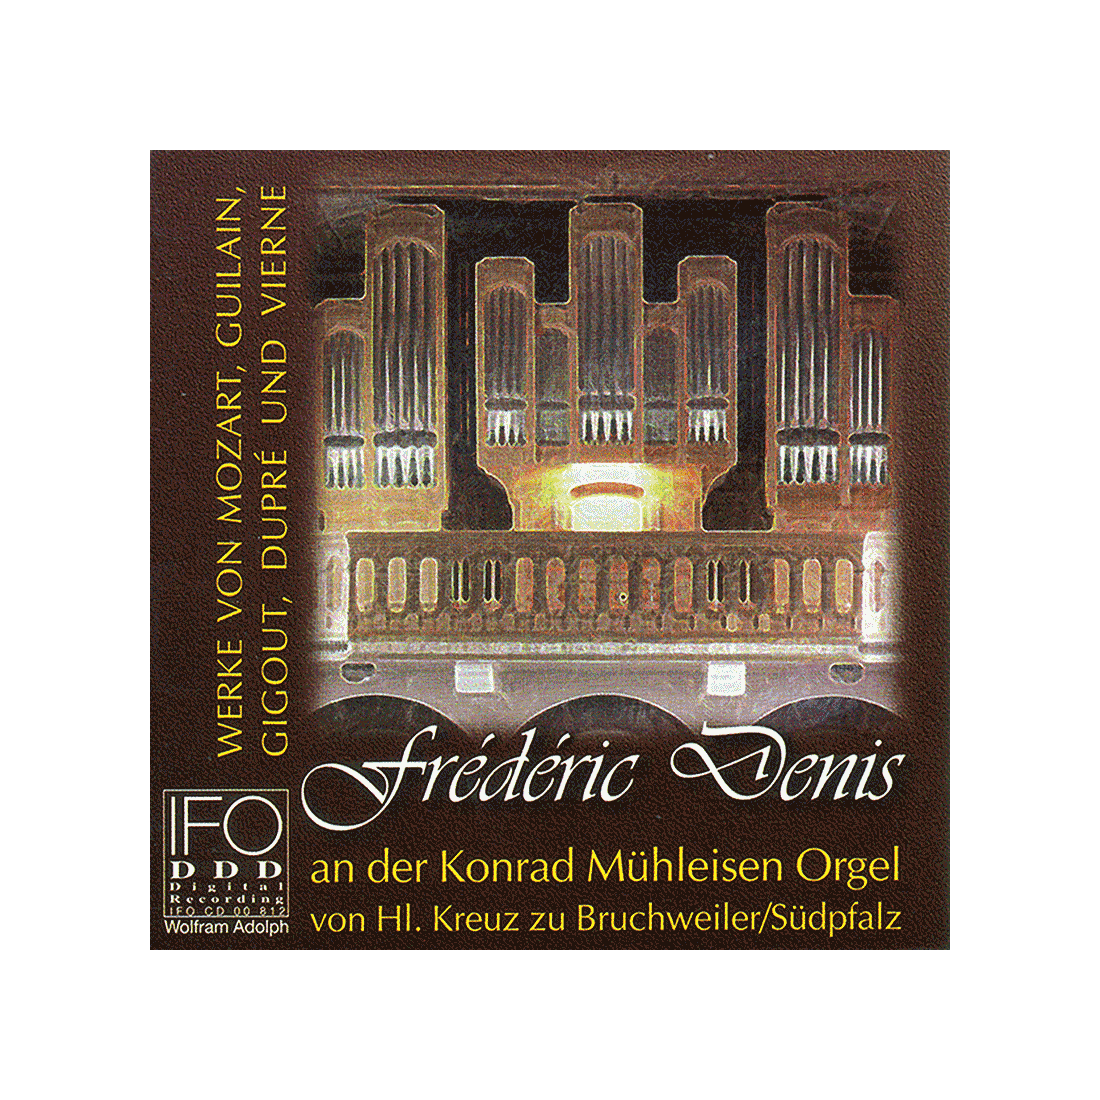 Frédéric Denis an der Konrad Mülheisen Orgel zu Bruchweiler